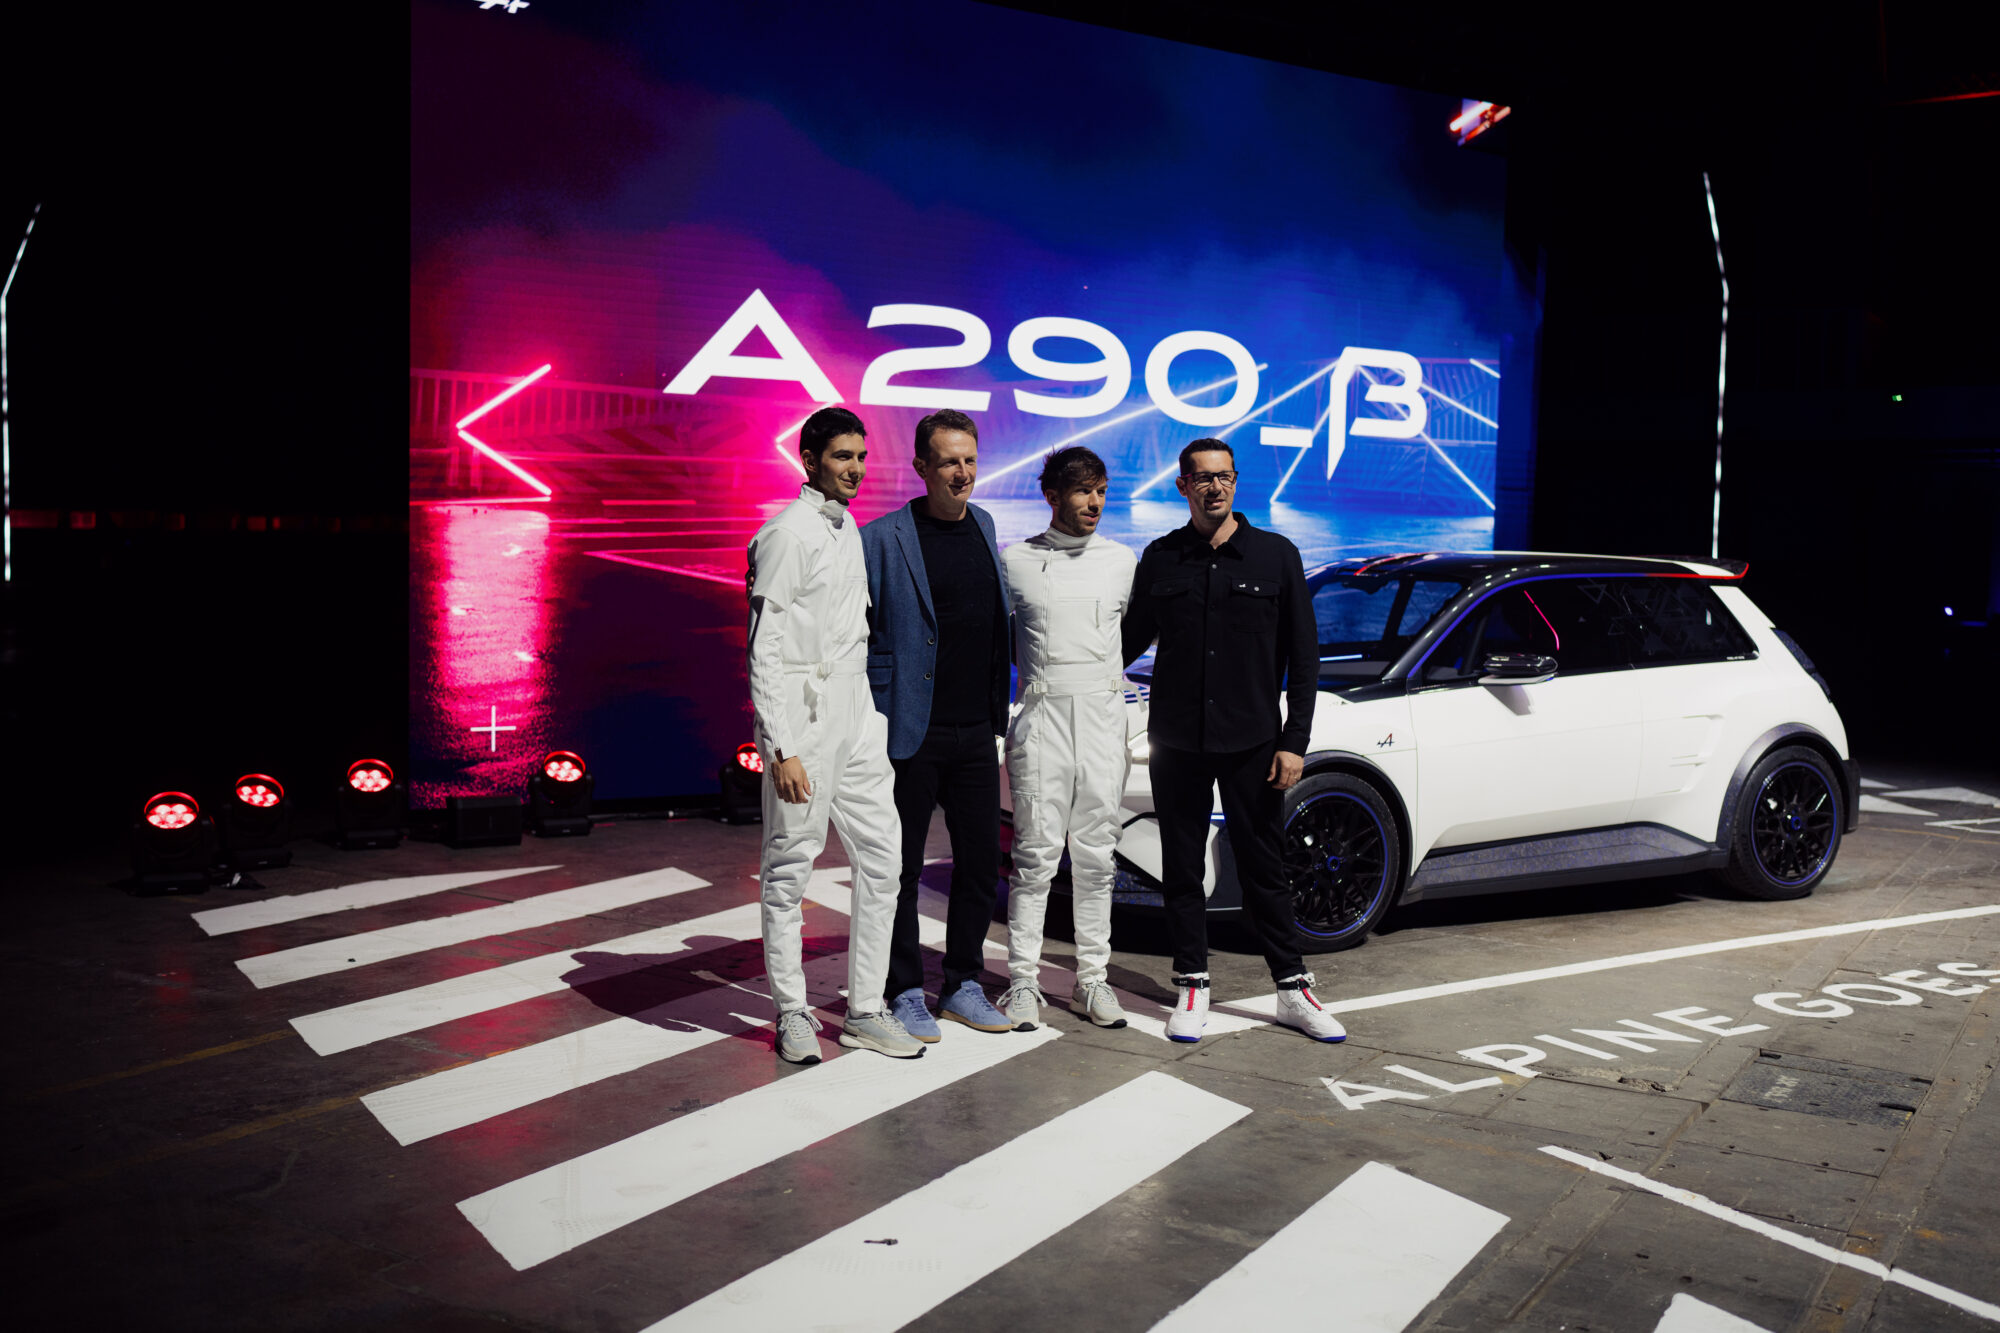 A290_β show-car reveal - Bristol